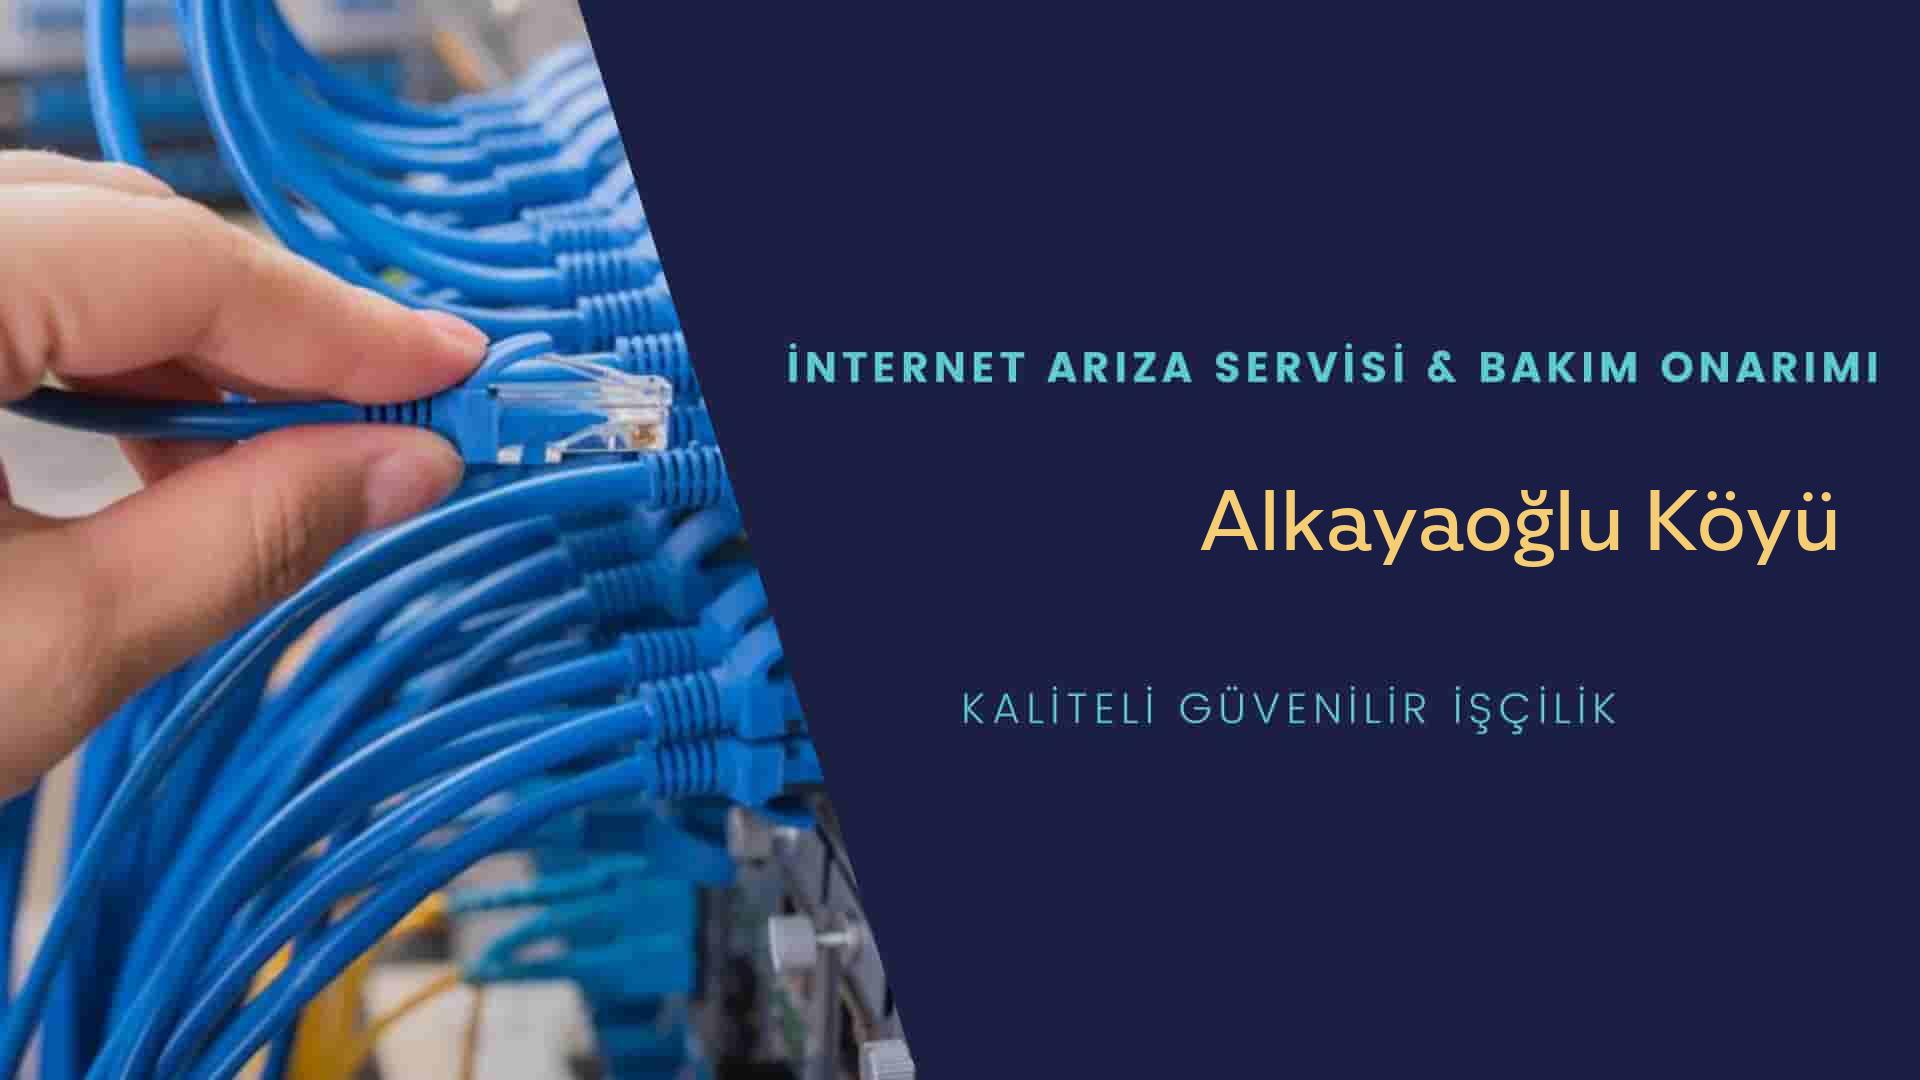 Alkayaoğlu Köyü internet kablosu çekimi yapan yerler veya elektrikçiler mi? arıyorsunuz doğru yerdesiniz o zaman sizlere 7/24 yardımcı olacak profesyonel ustalarımız bir telefon kadar yakındır size.